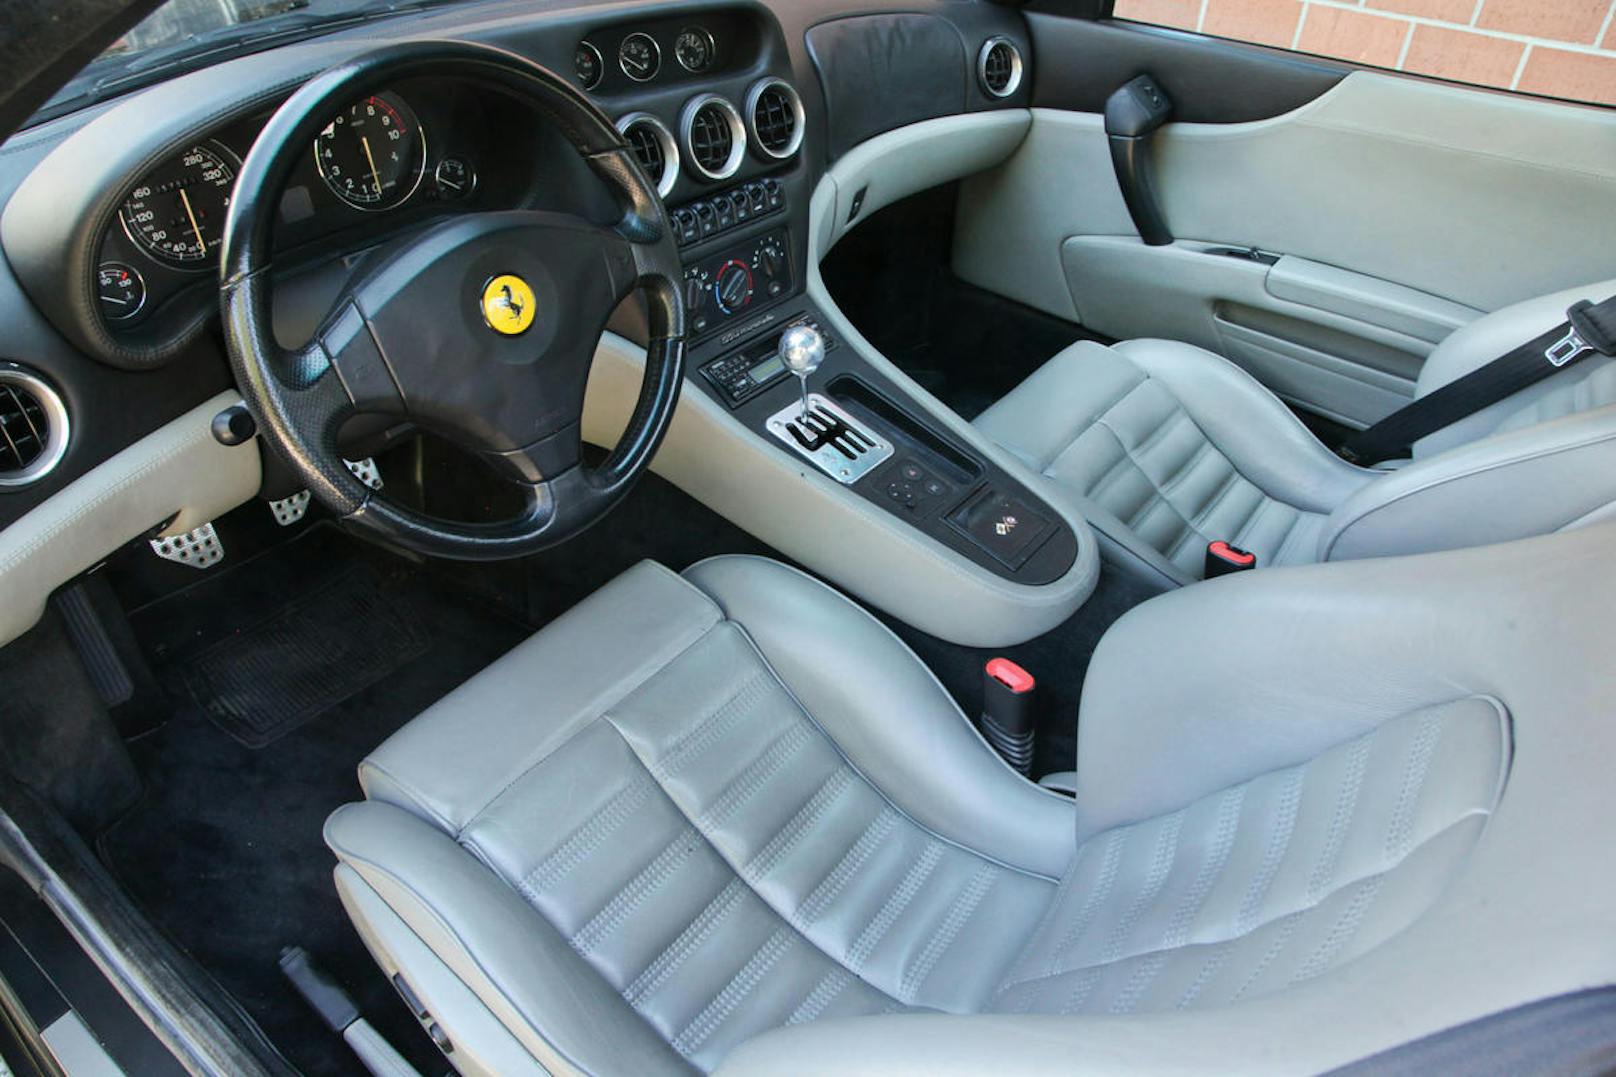 Bequeme Sitze mit gutem Seitenhalt machen den Aufenthalt im Ferrari auch auf Langstrecken angenehm.